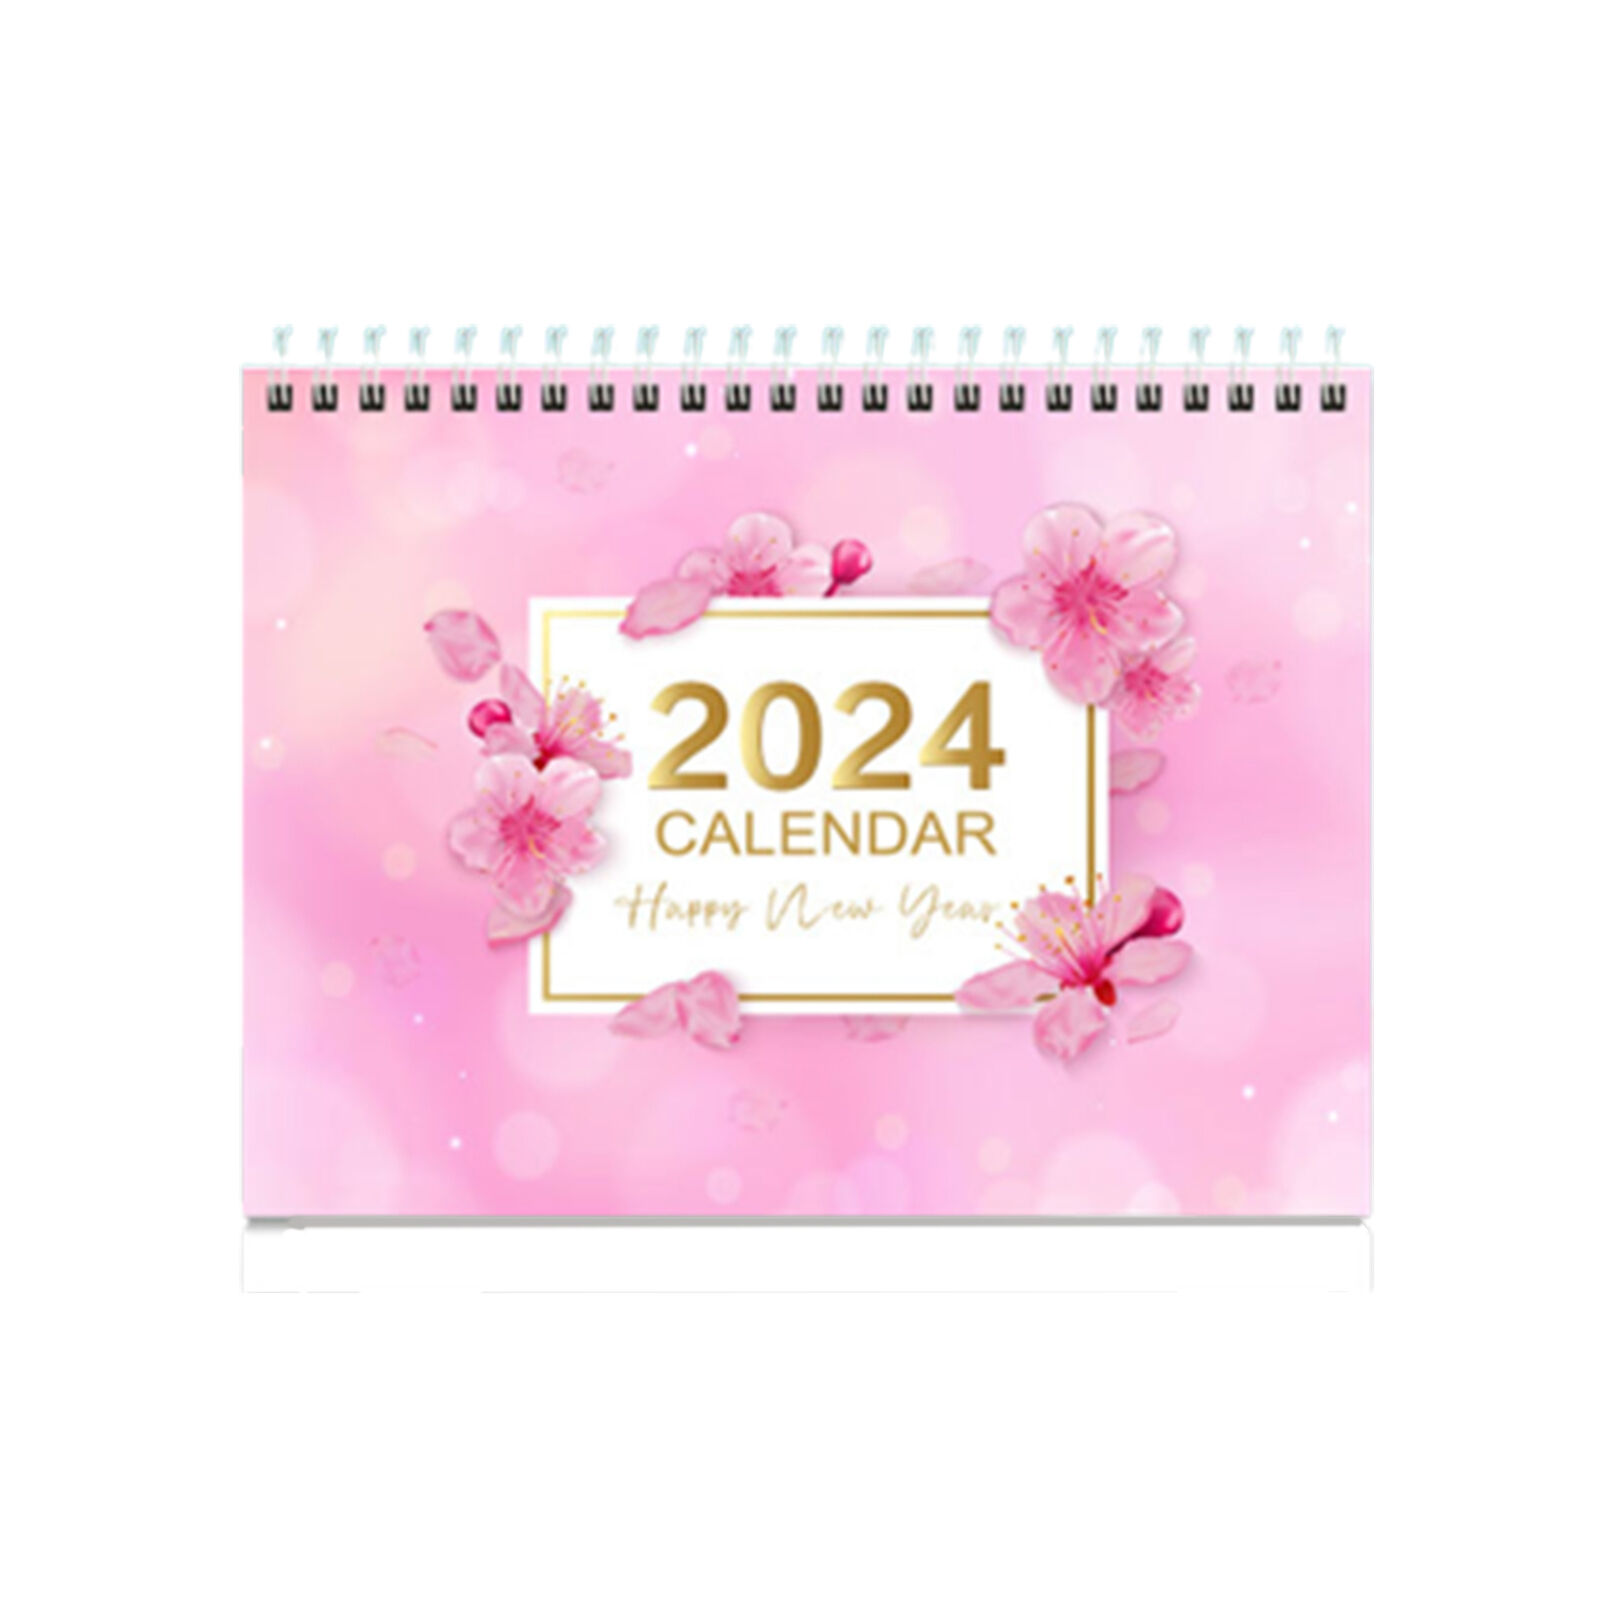 2024 Desk Calendar Standing   Desktop Calendar Small Daily Planning Monthly 